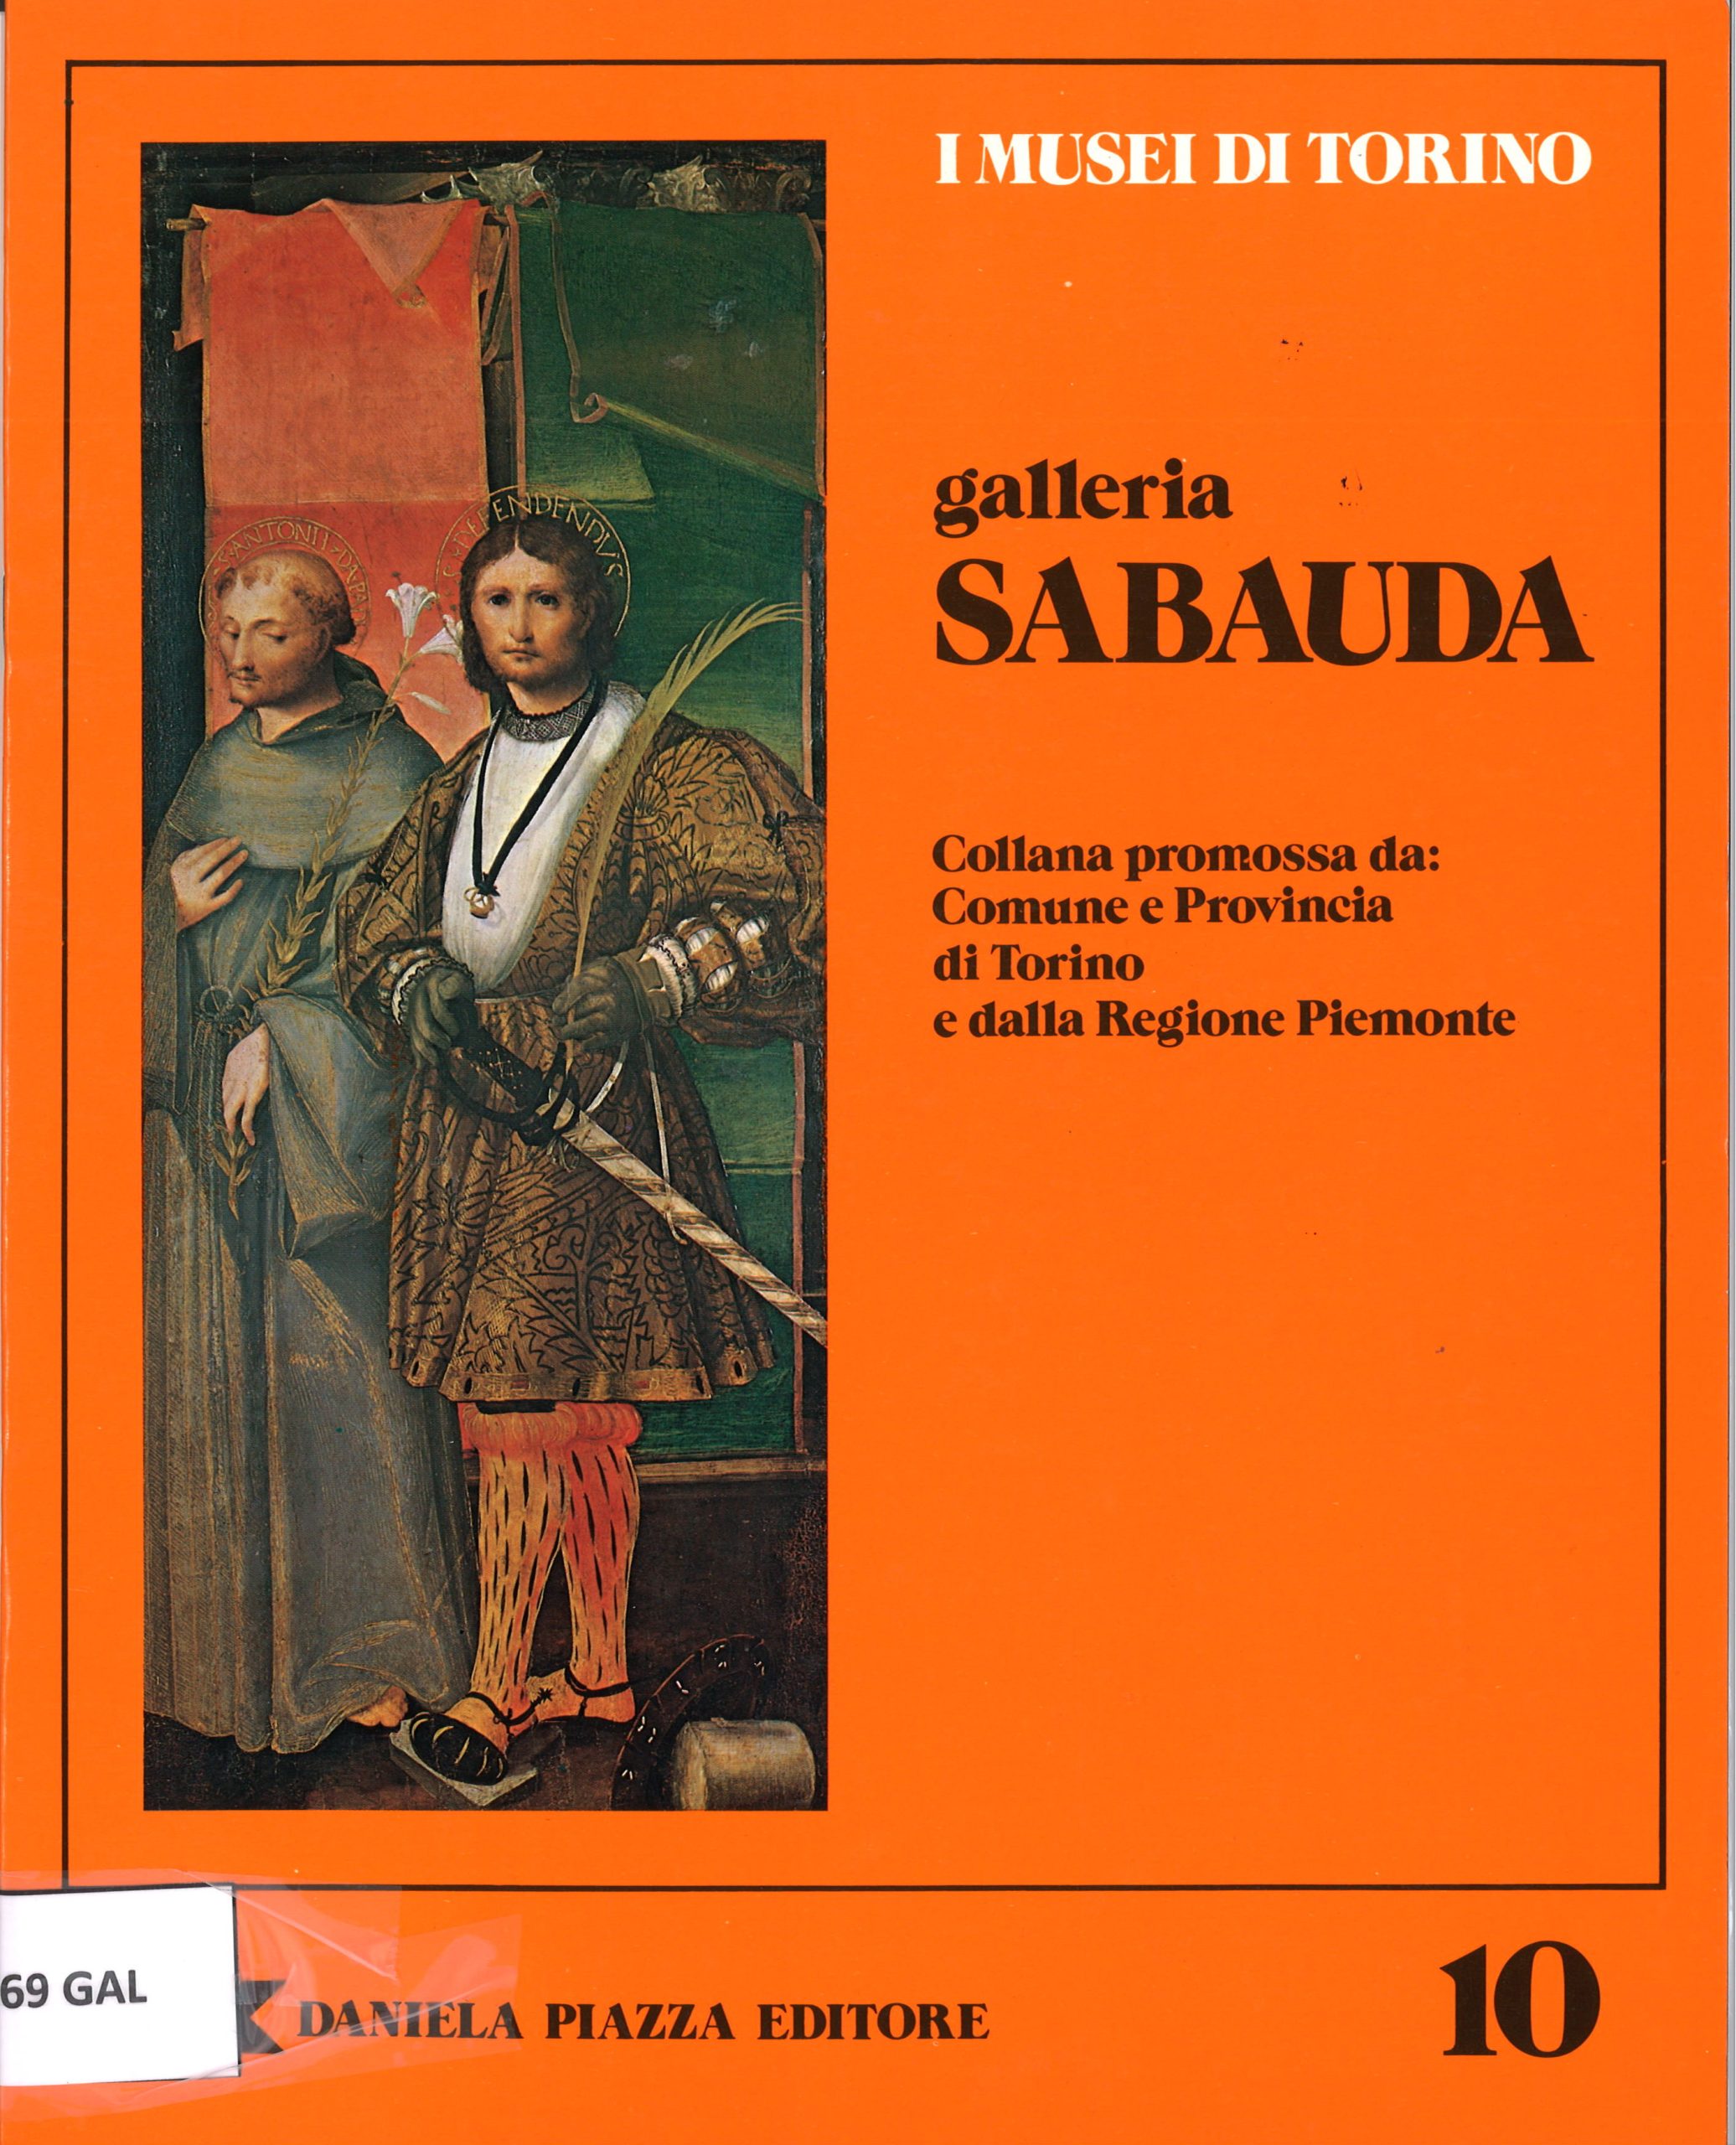 Galleria Sabaudia. I Musei di Torino. Collana promossa da: Comune e Provincia di Torino e dalla Regione Piemonte-image